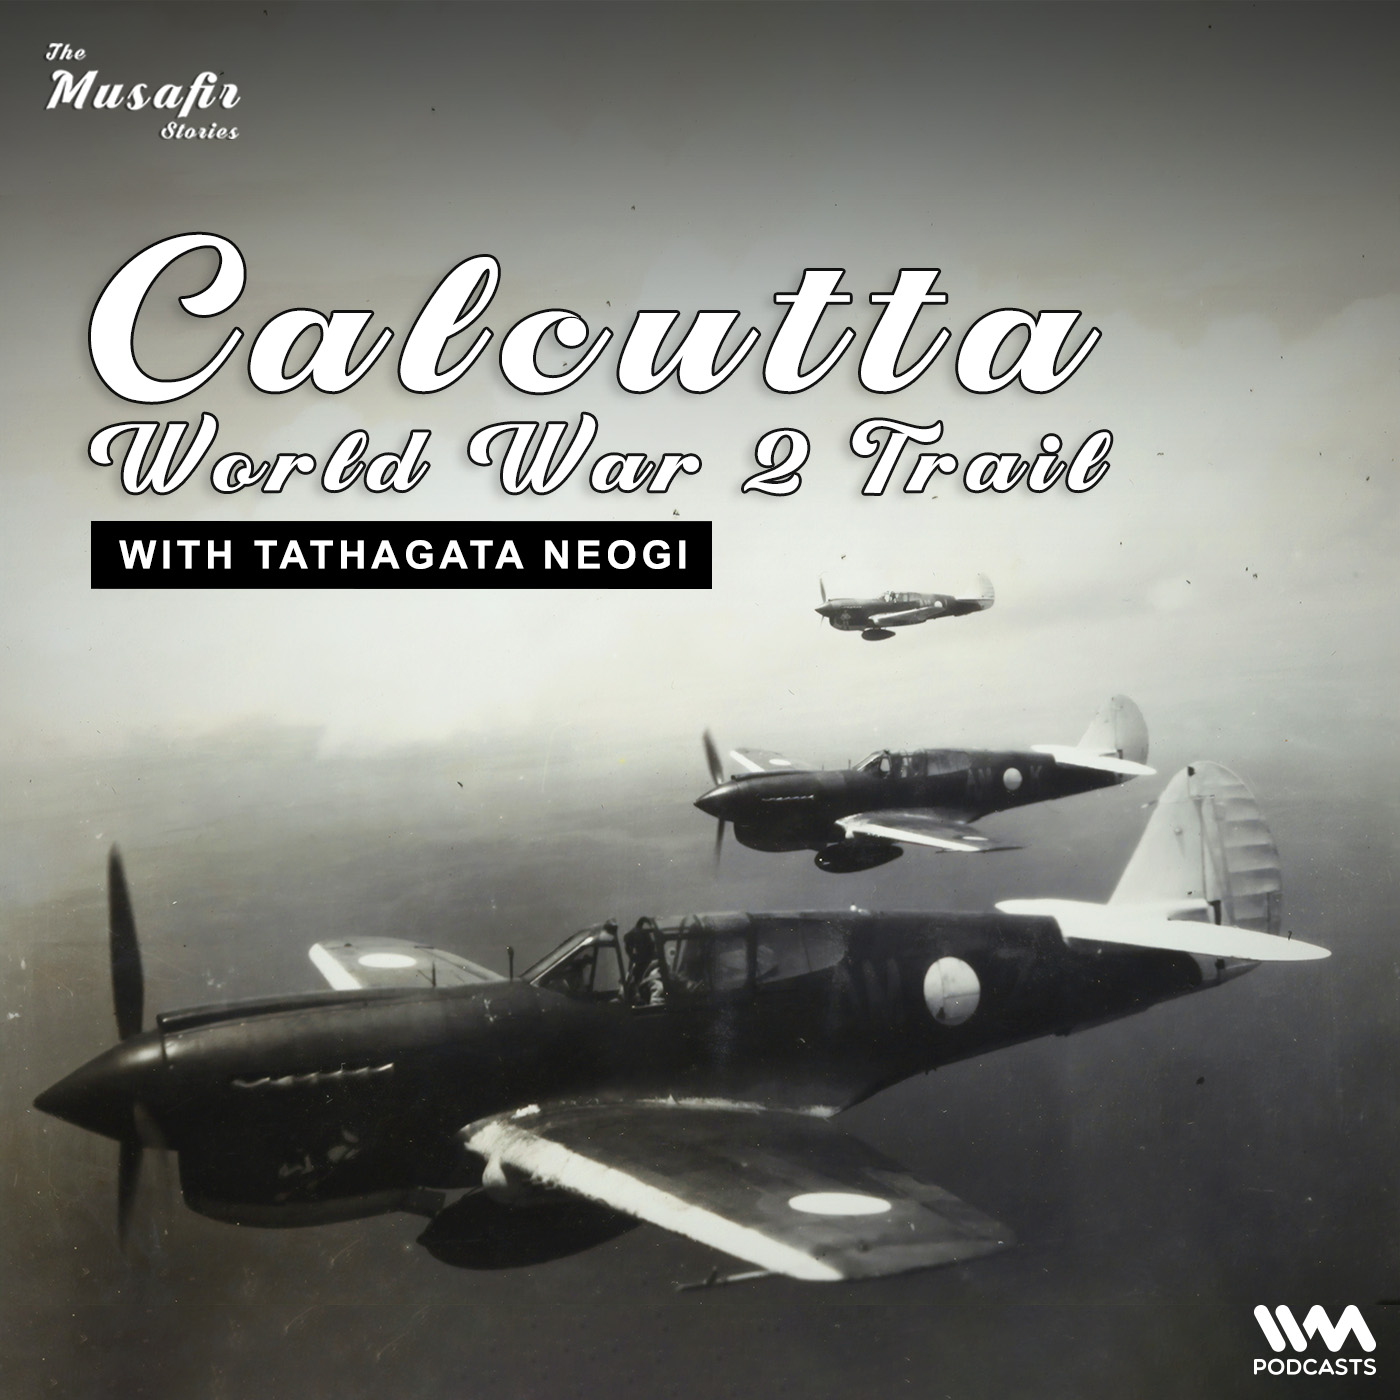 Calcutta World War 2 Trail with Tathagata Neogi